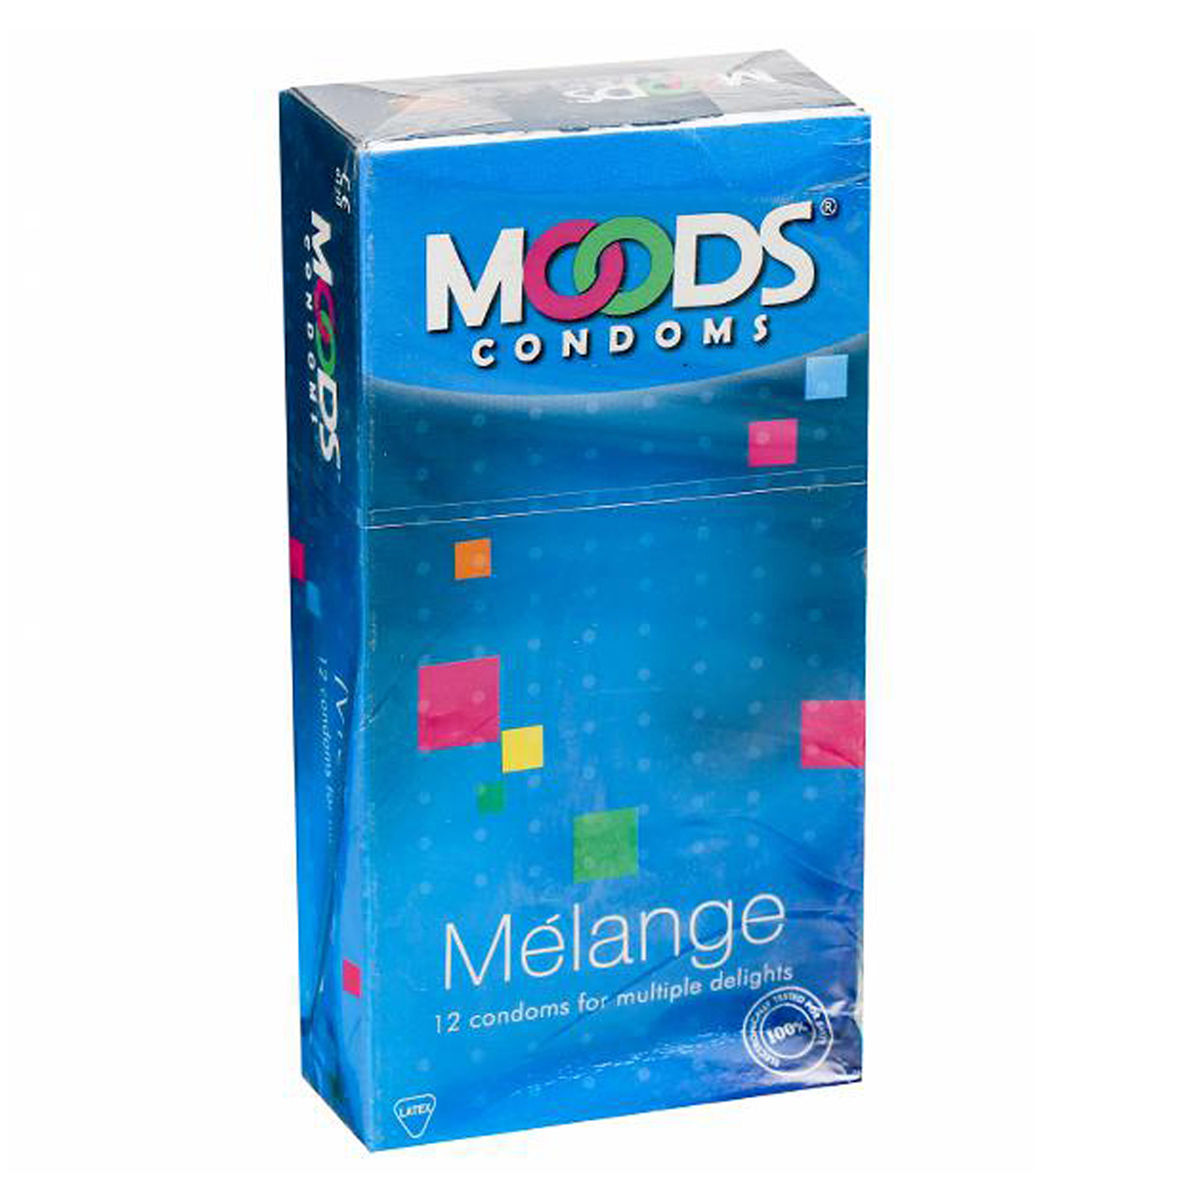 Buy Moods Melange Condoms, 12 Count Online